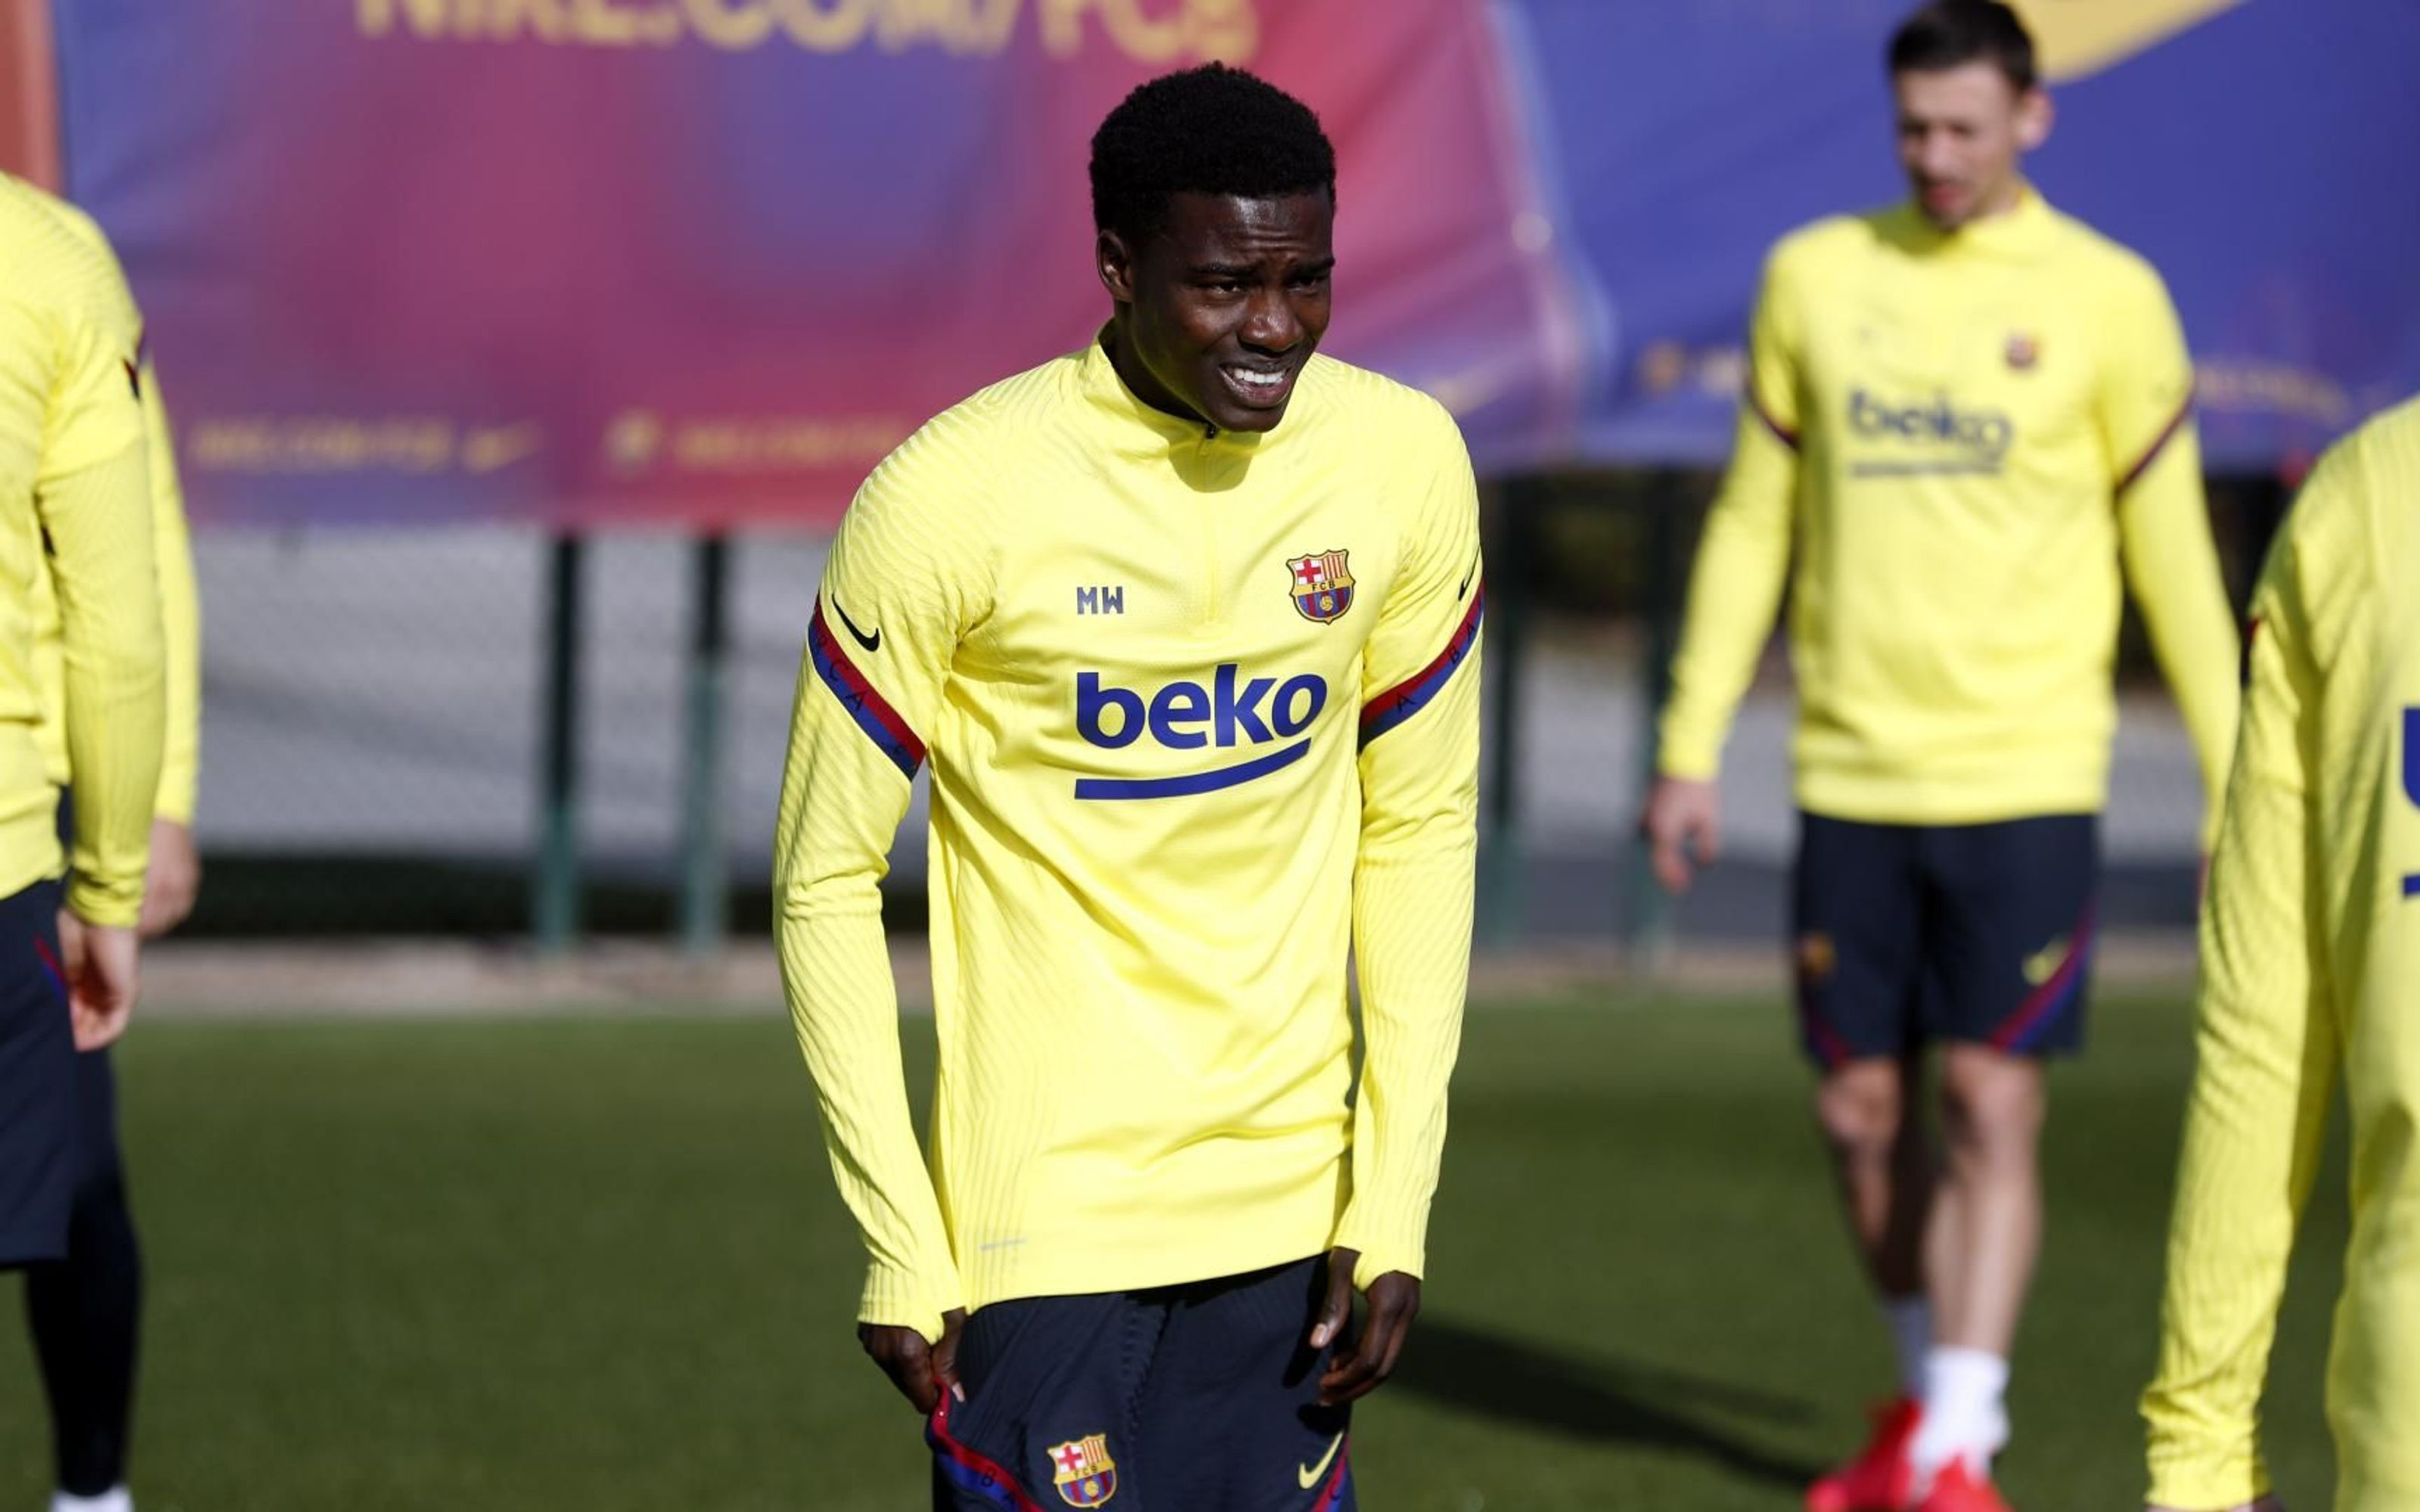 Moussa Wagué en un entrenamiento del Barça / FC Barcelona